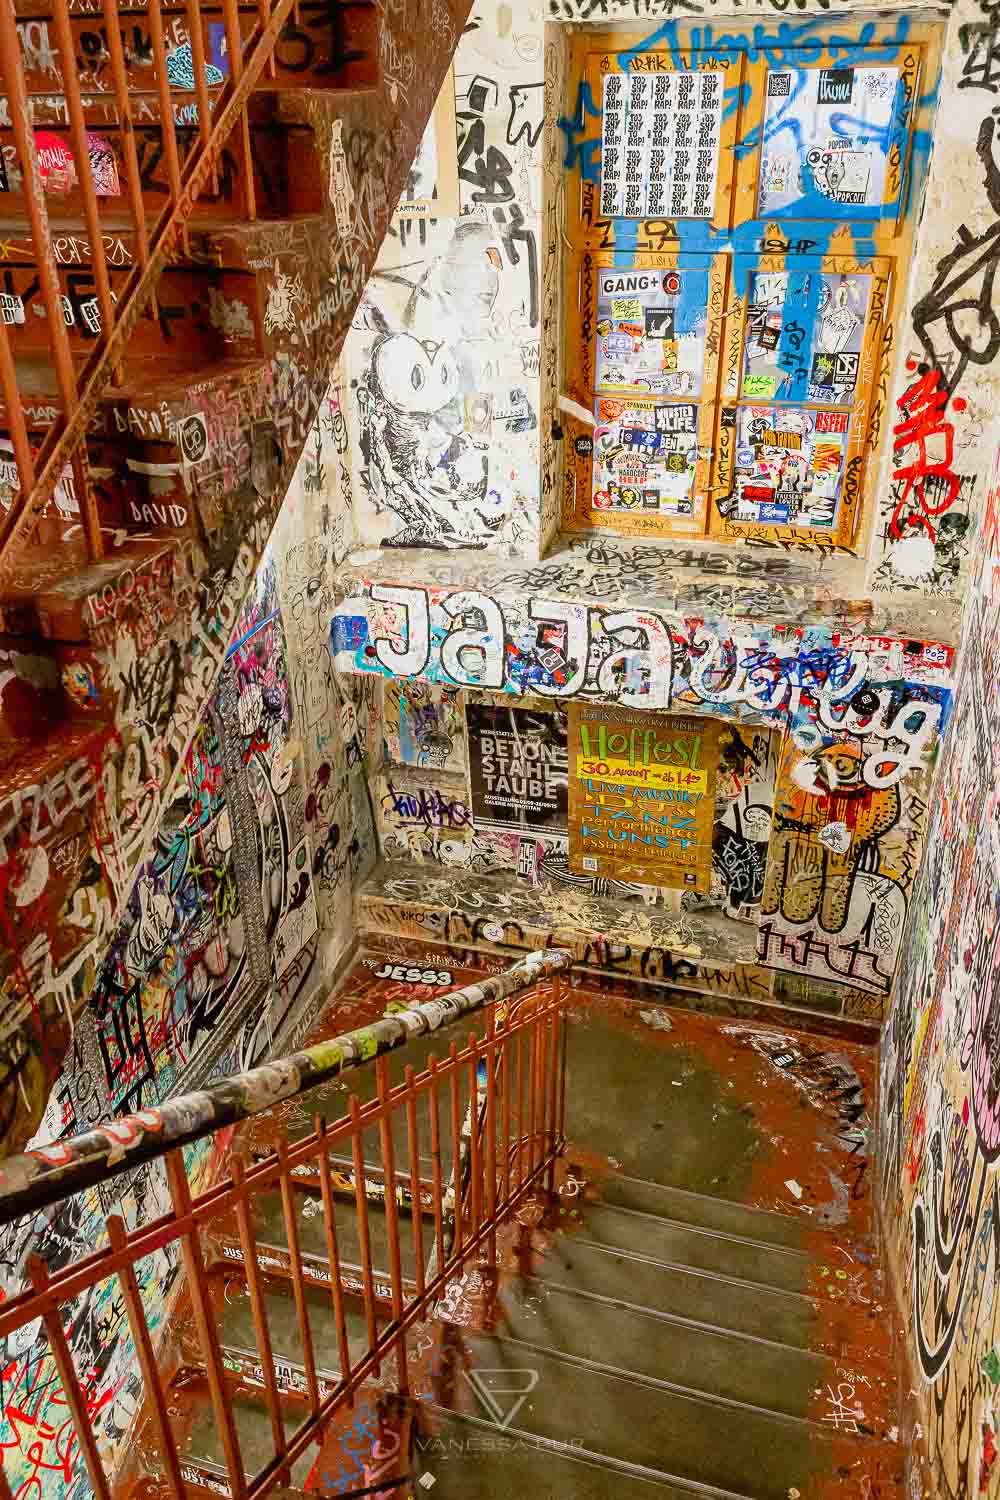 Berlin Graffiti Tour - Sehenswürdigkeiten Alternative Berlin Tours - Berlin Grafitti Tour - die andere Seite von Berlin - Stadtrundgang - Sehenswürdigkeiten Berlin in den Hinterhöfen